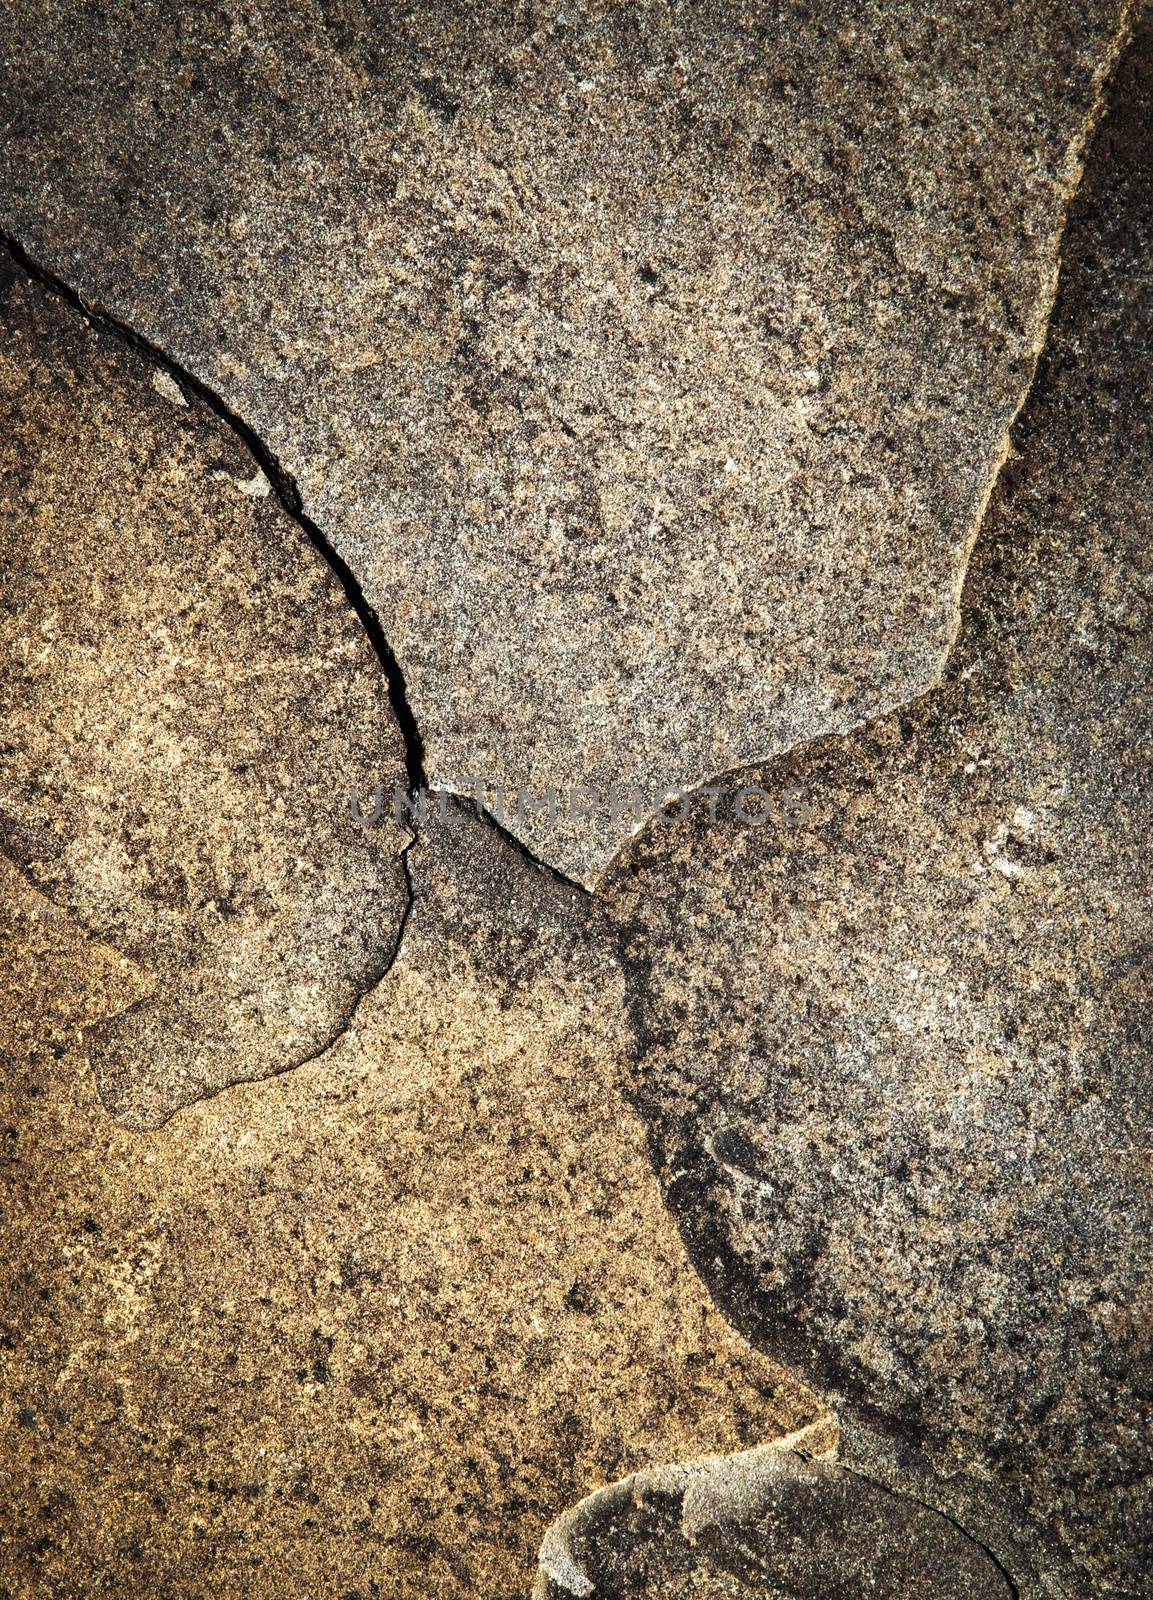 detail crack on sandstone rock by Ahojdoma